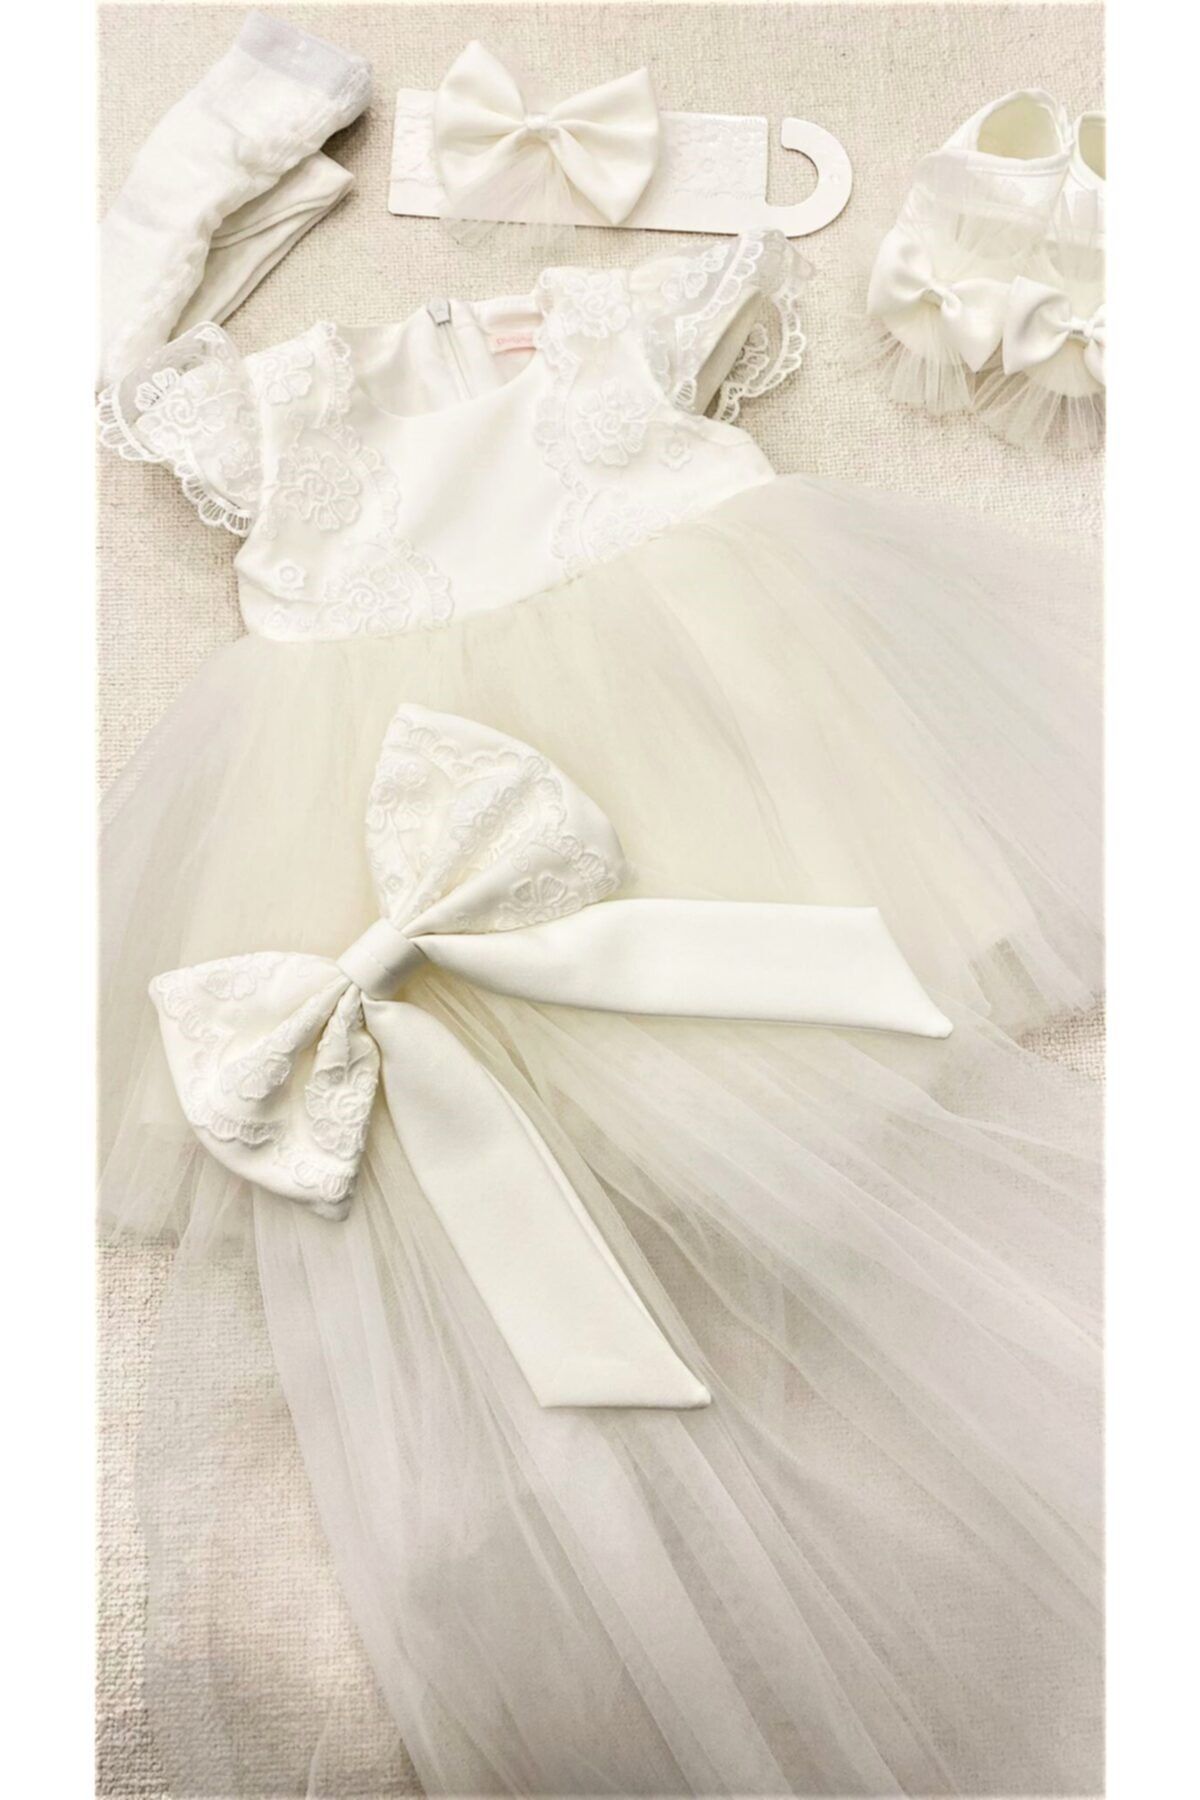 Pugi Baby Bebek Elbise Seti Dantel Detaylı Kuyruklu Model